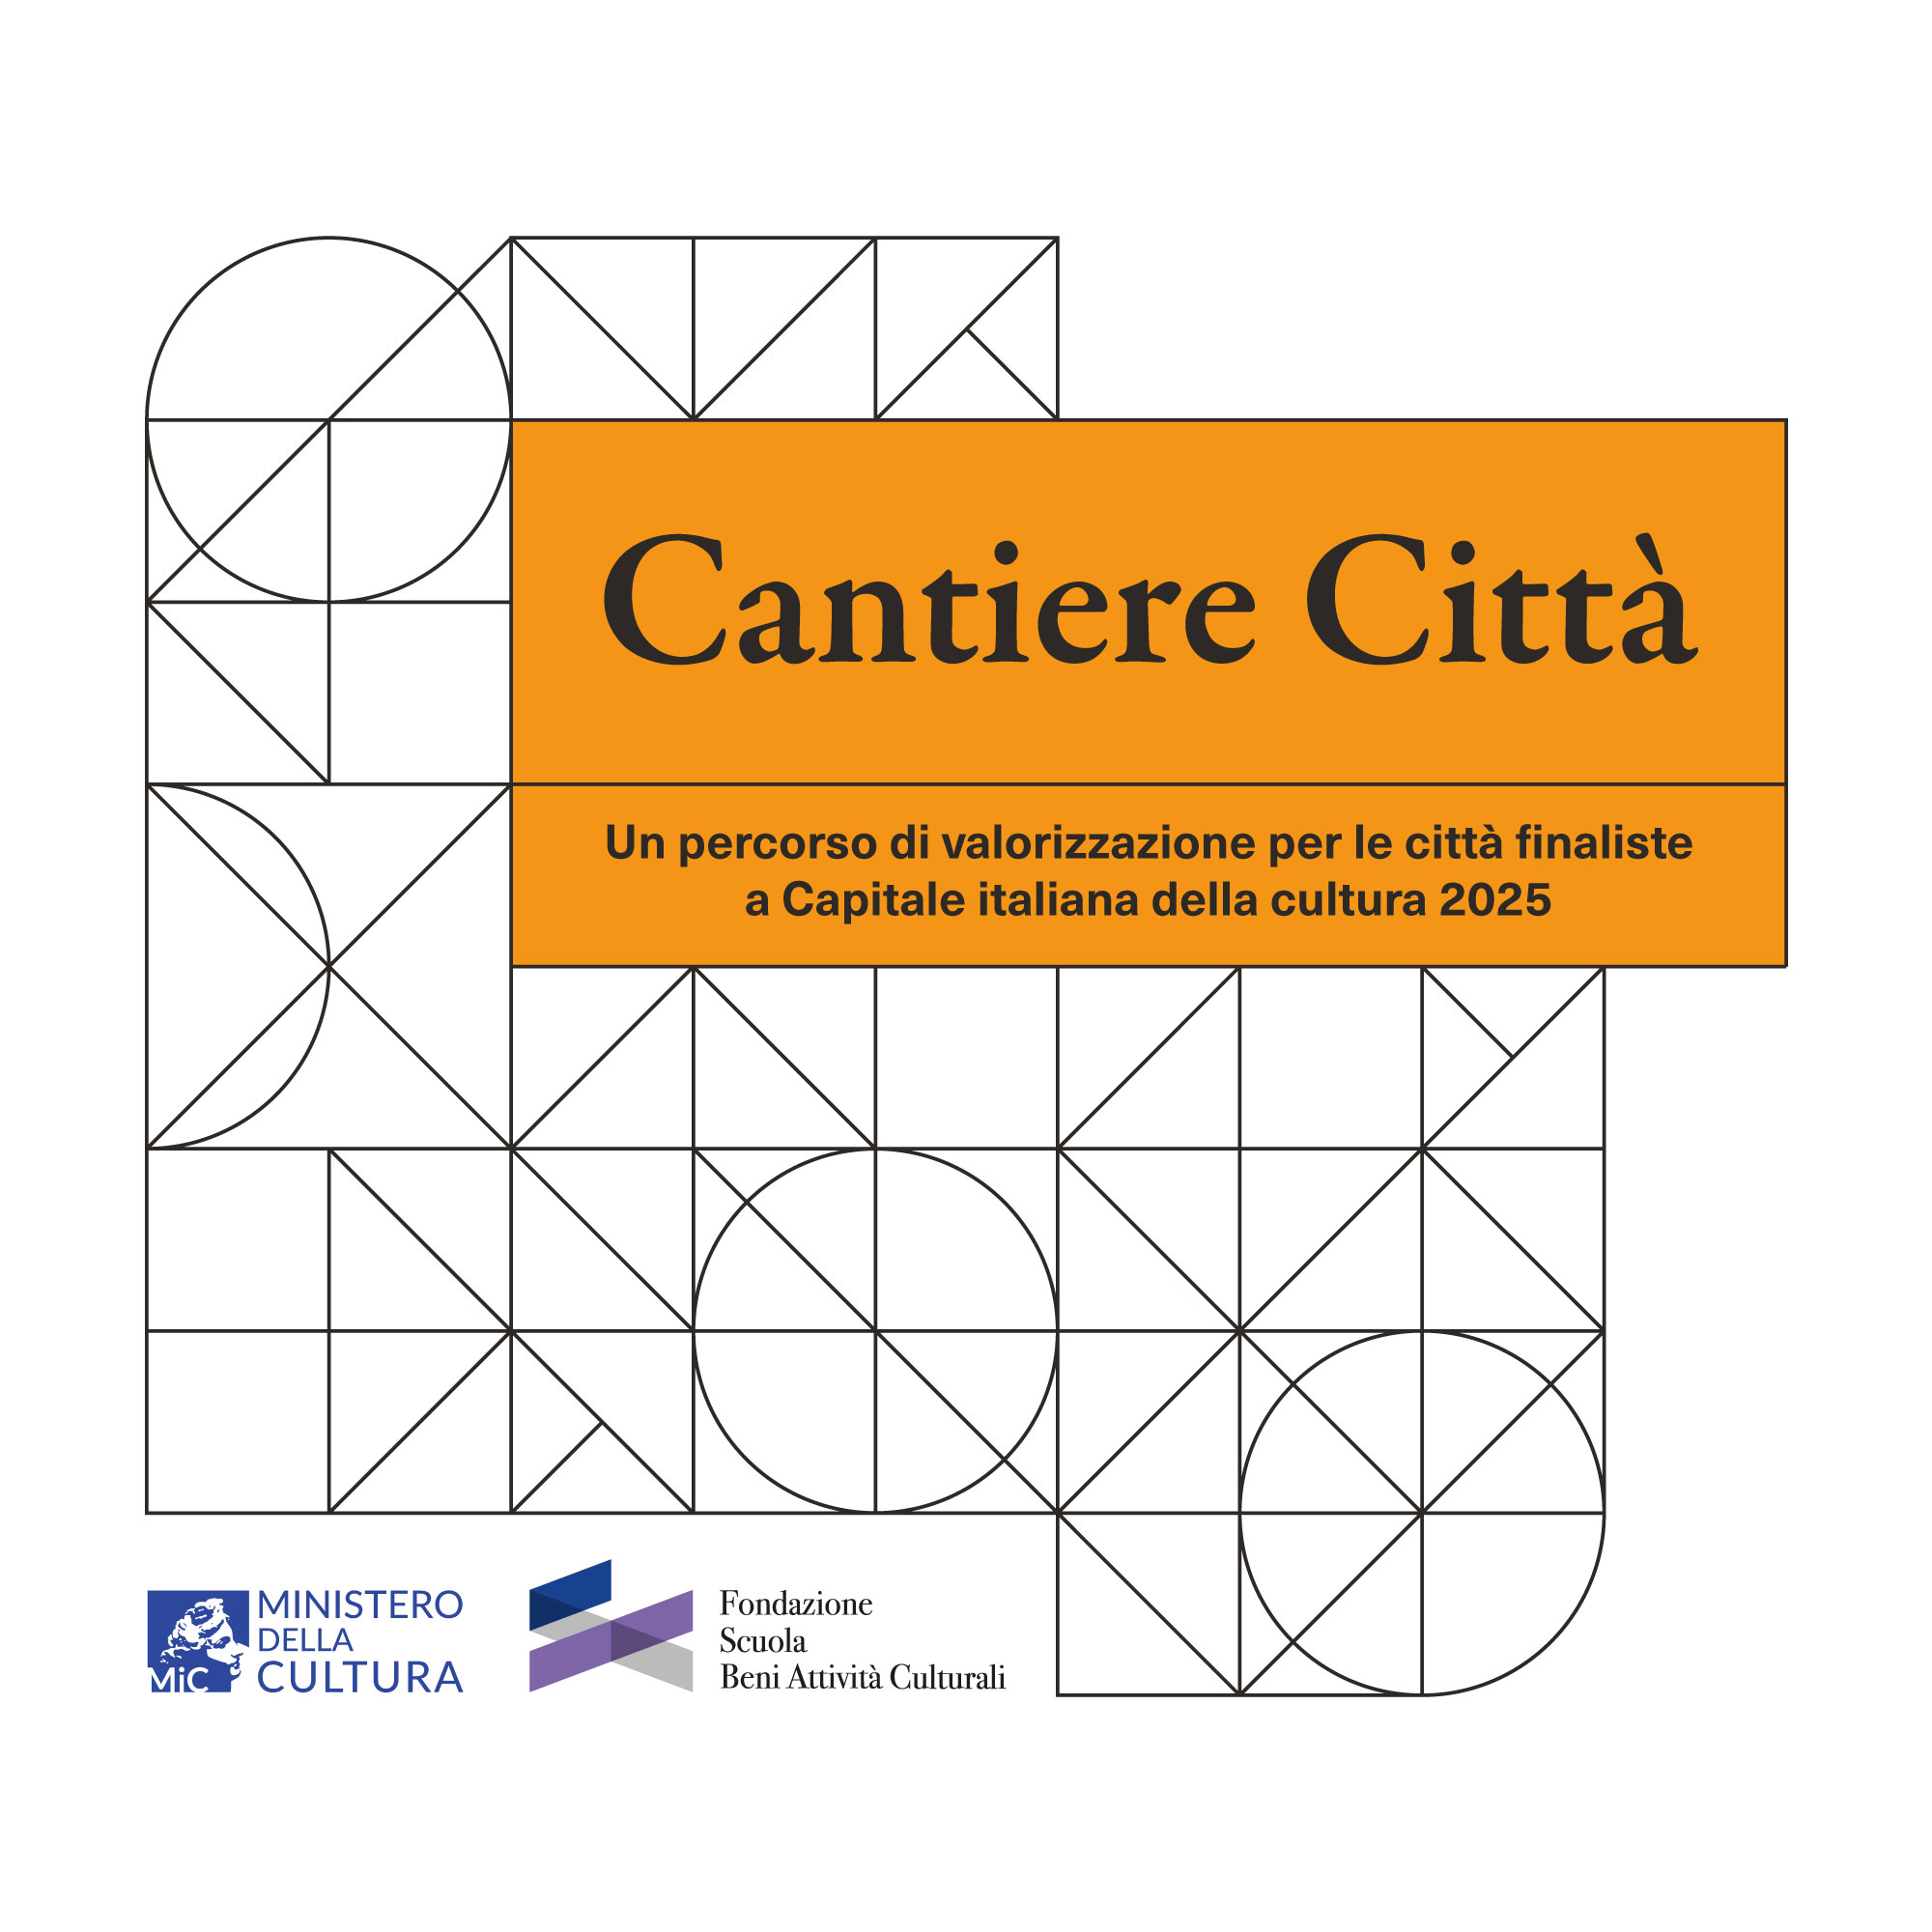 Capitale italiana della cultura, seconda edizione del piano per valorizzare le città finaliste 2025